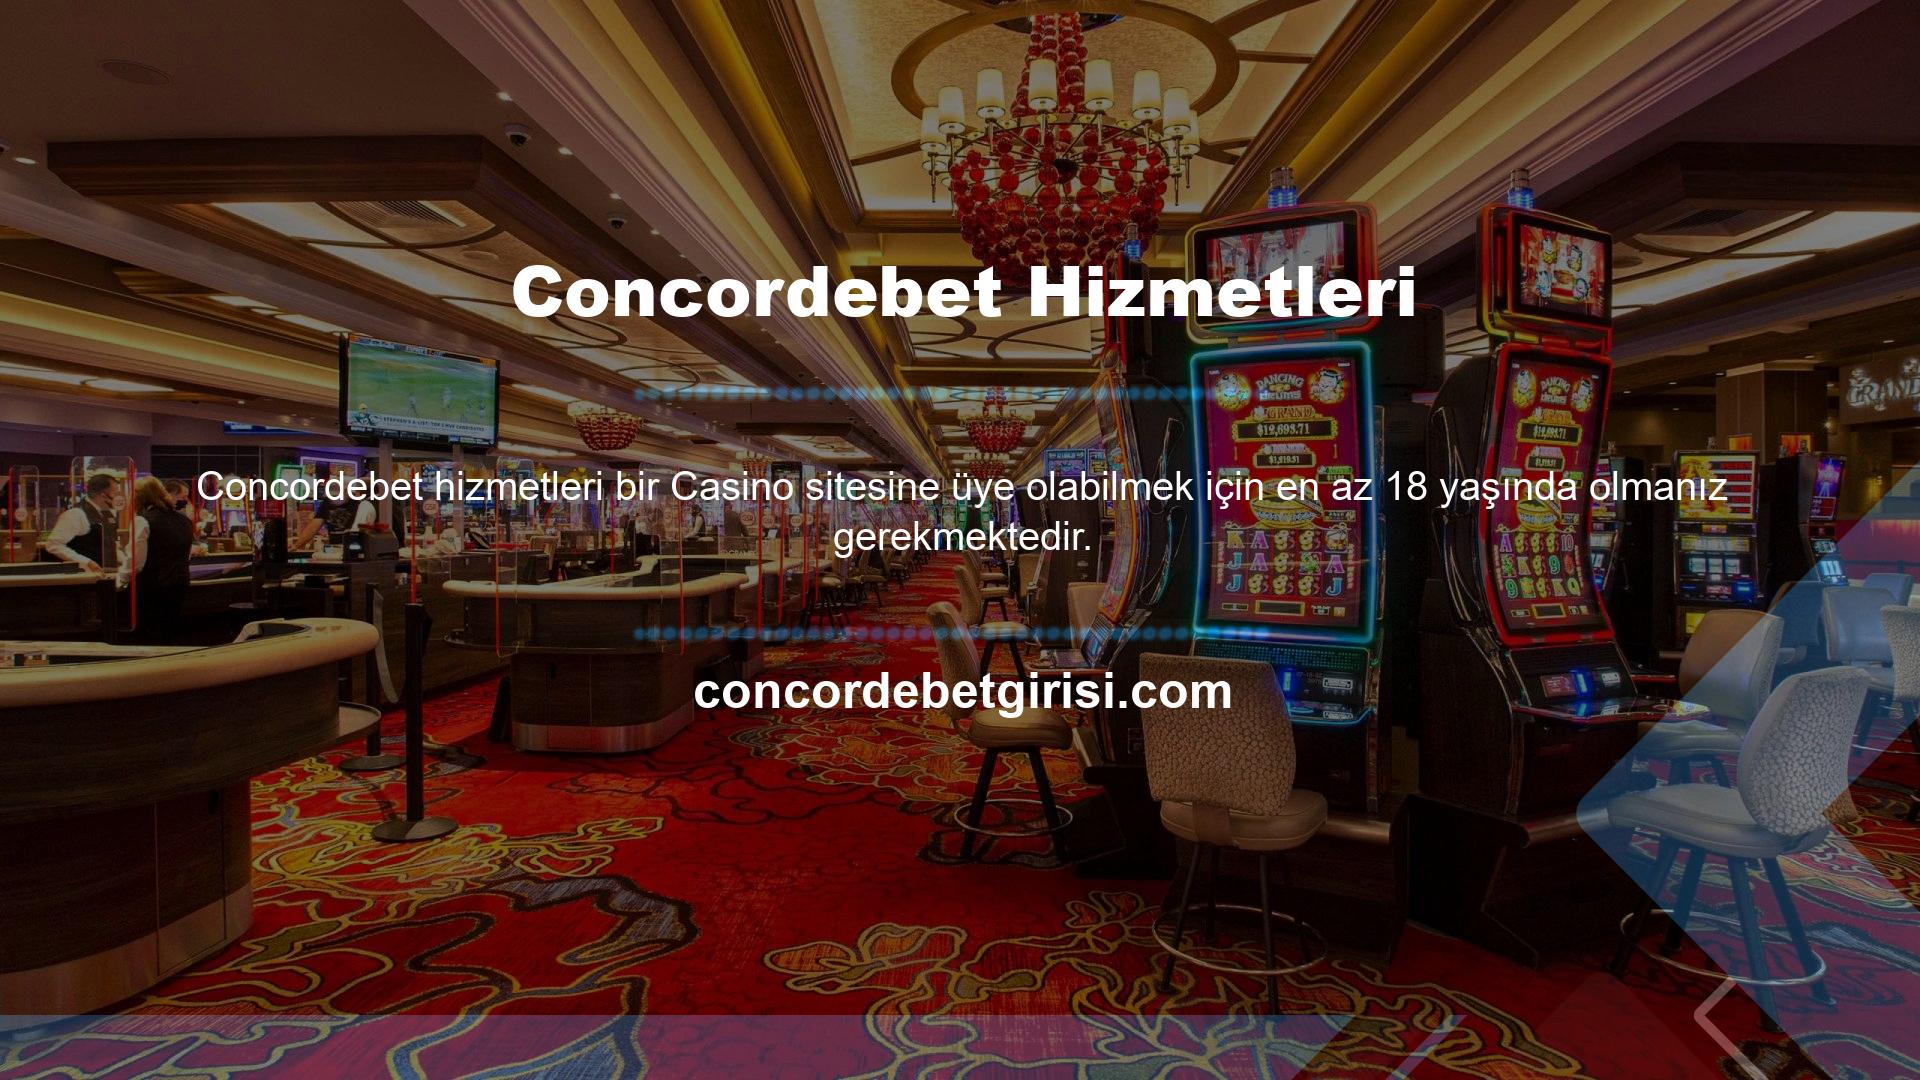 Concordebet çevrimiçi Casino sitesine kaydolduğunuzda kişisel bilgilerinizin doğru olduğundan emin olmanız gerekir